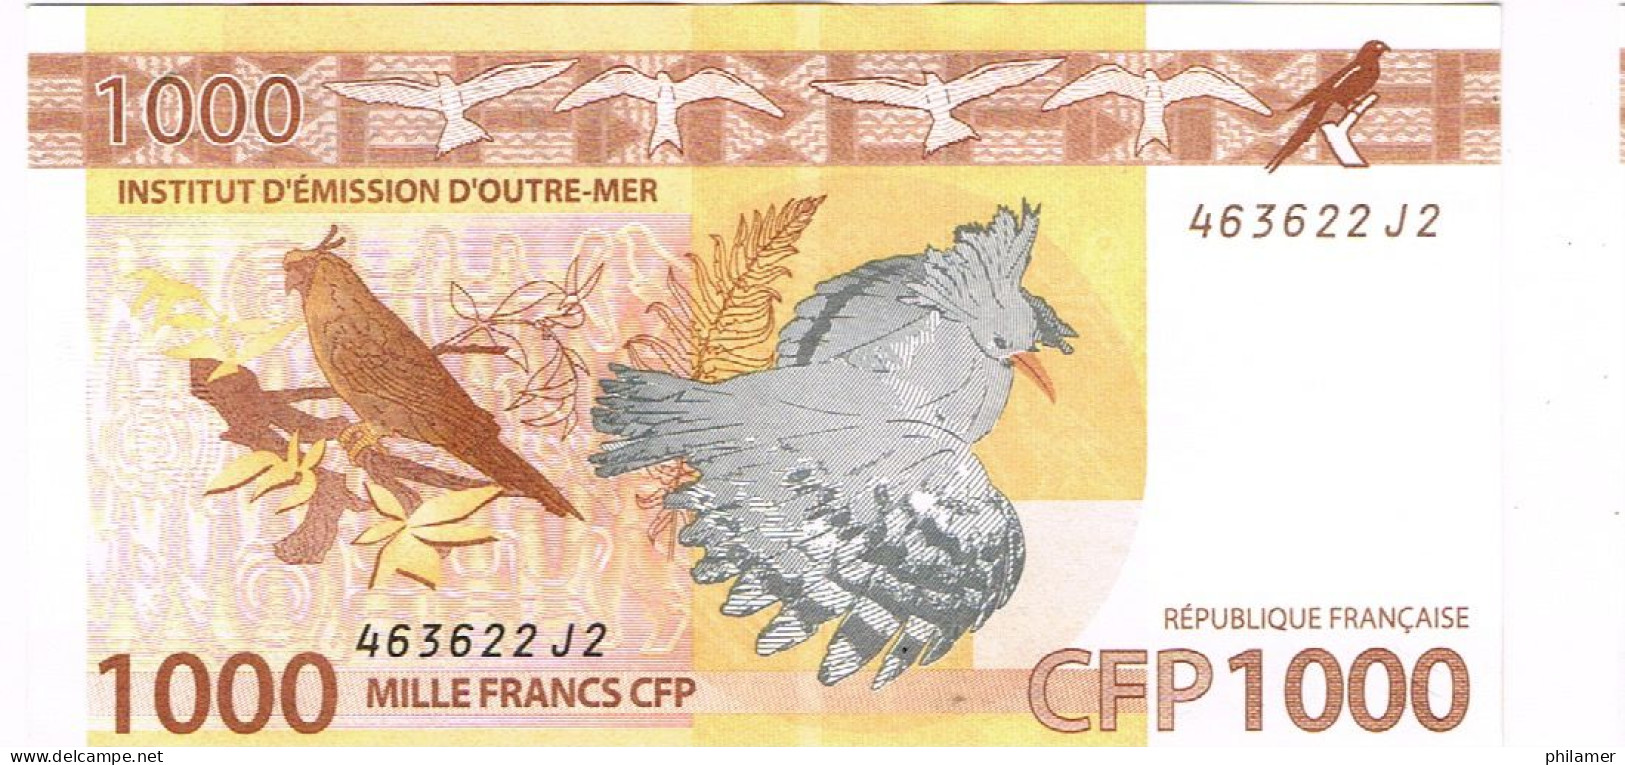 J2 Nouvelle Caledonie Caledonia Billet Banque Monnaie Banknote IEOM 1000 F Cagou Perruche Tortue Turtle Mint UNC - Französisch-Pazifik Gebiete (1992-...)